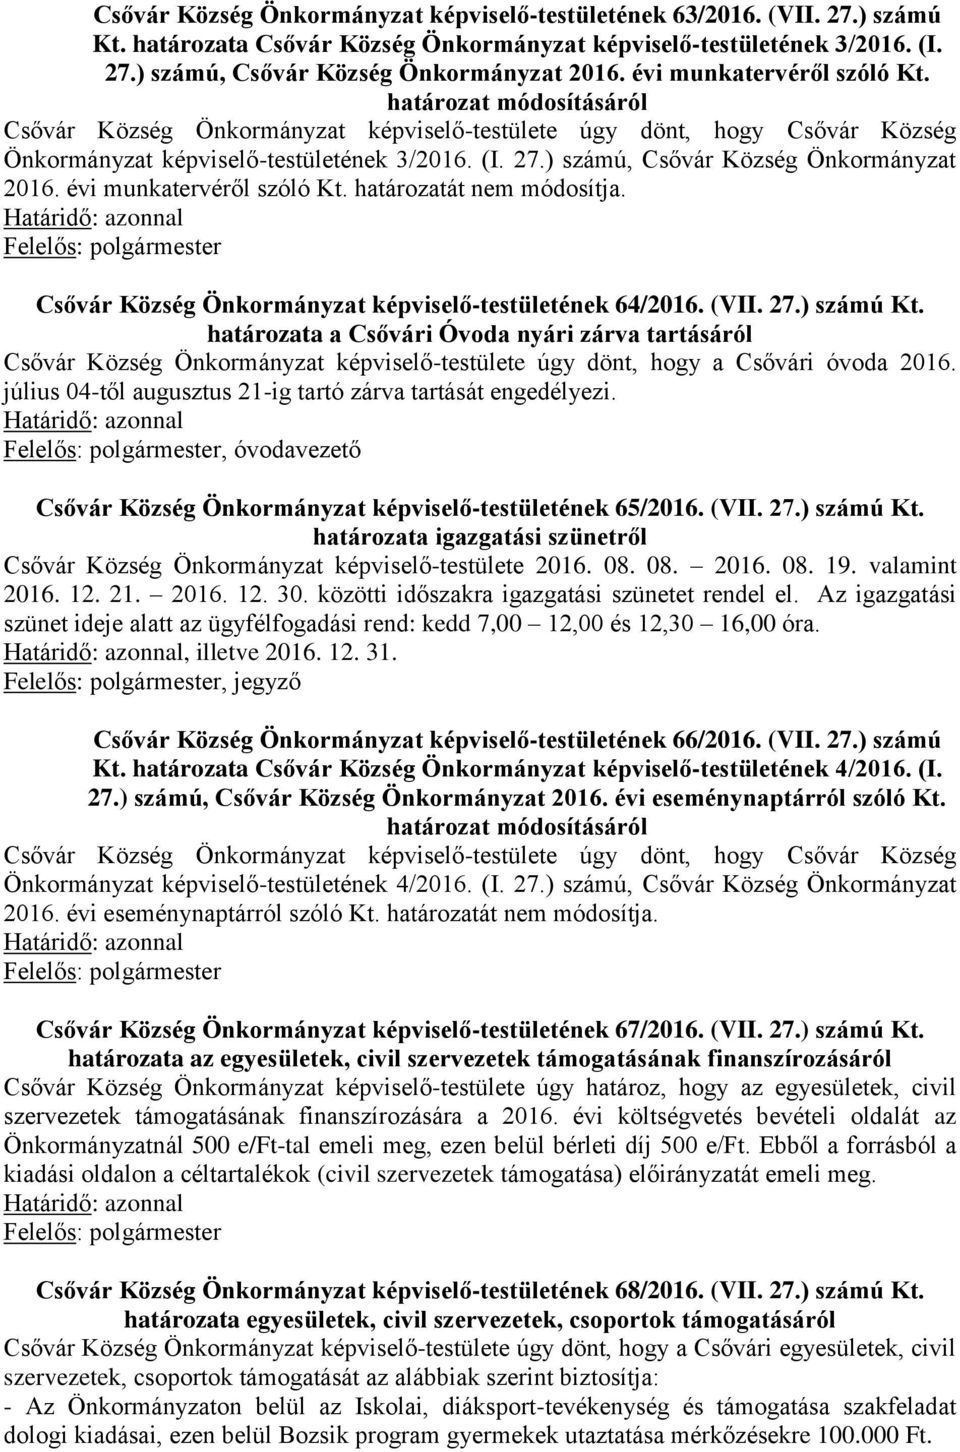 ) számú, Csővár Község Önkormányzat 2016. évi munkatervéről szóló Kt. határozatát nem módosítja. Csővár Község Önkormányzat képviselő-testületének 64/2016. (VII. 27.) számú Kt.